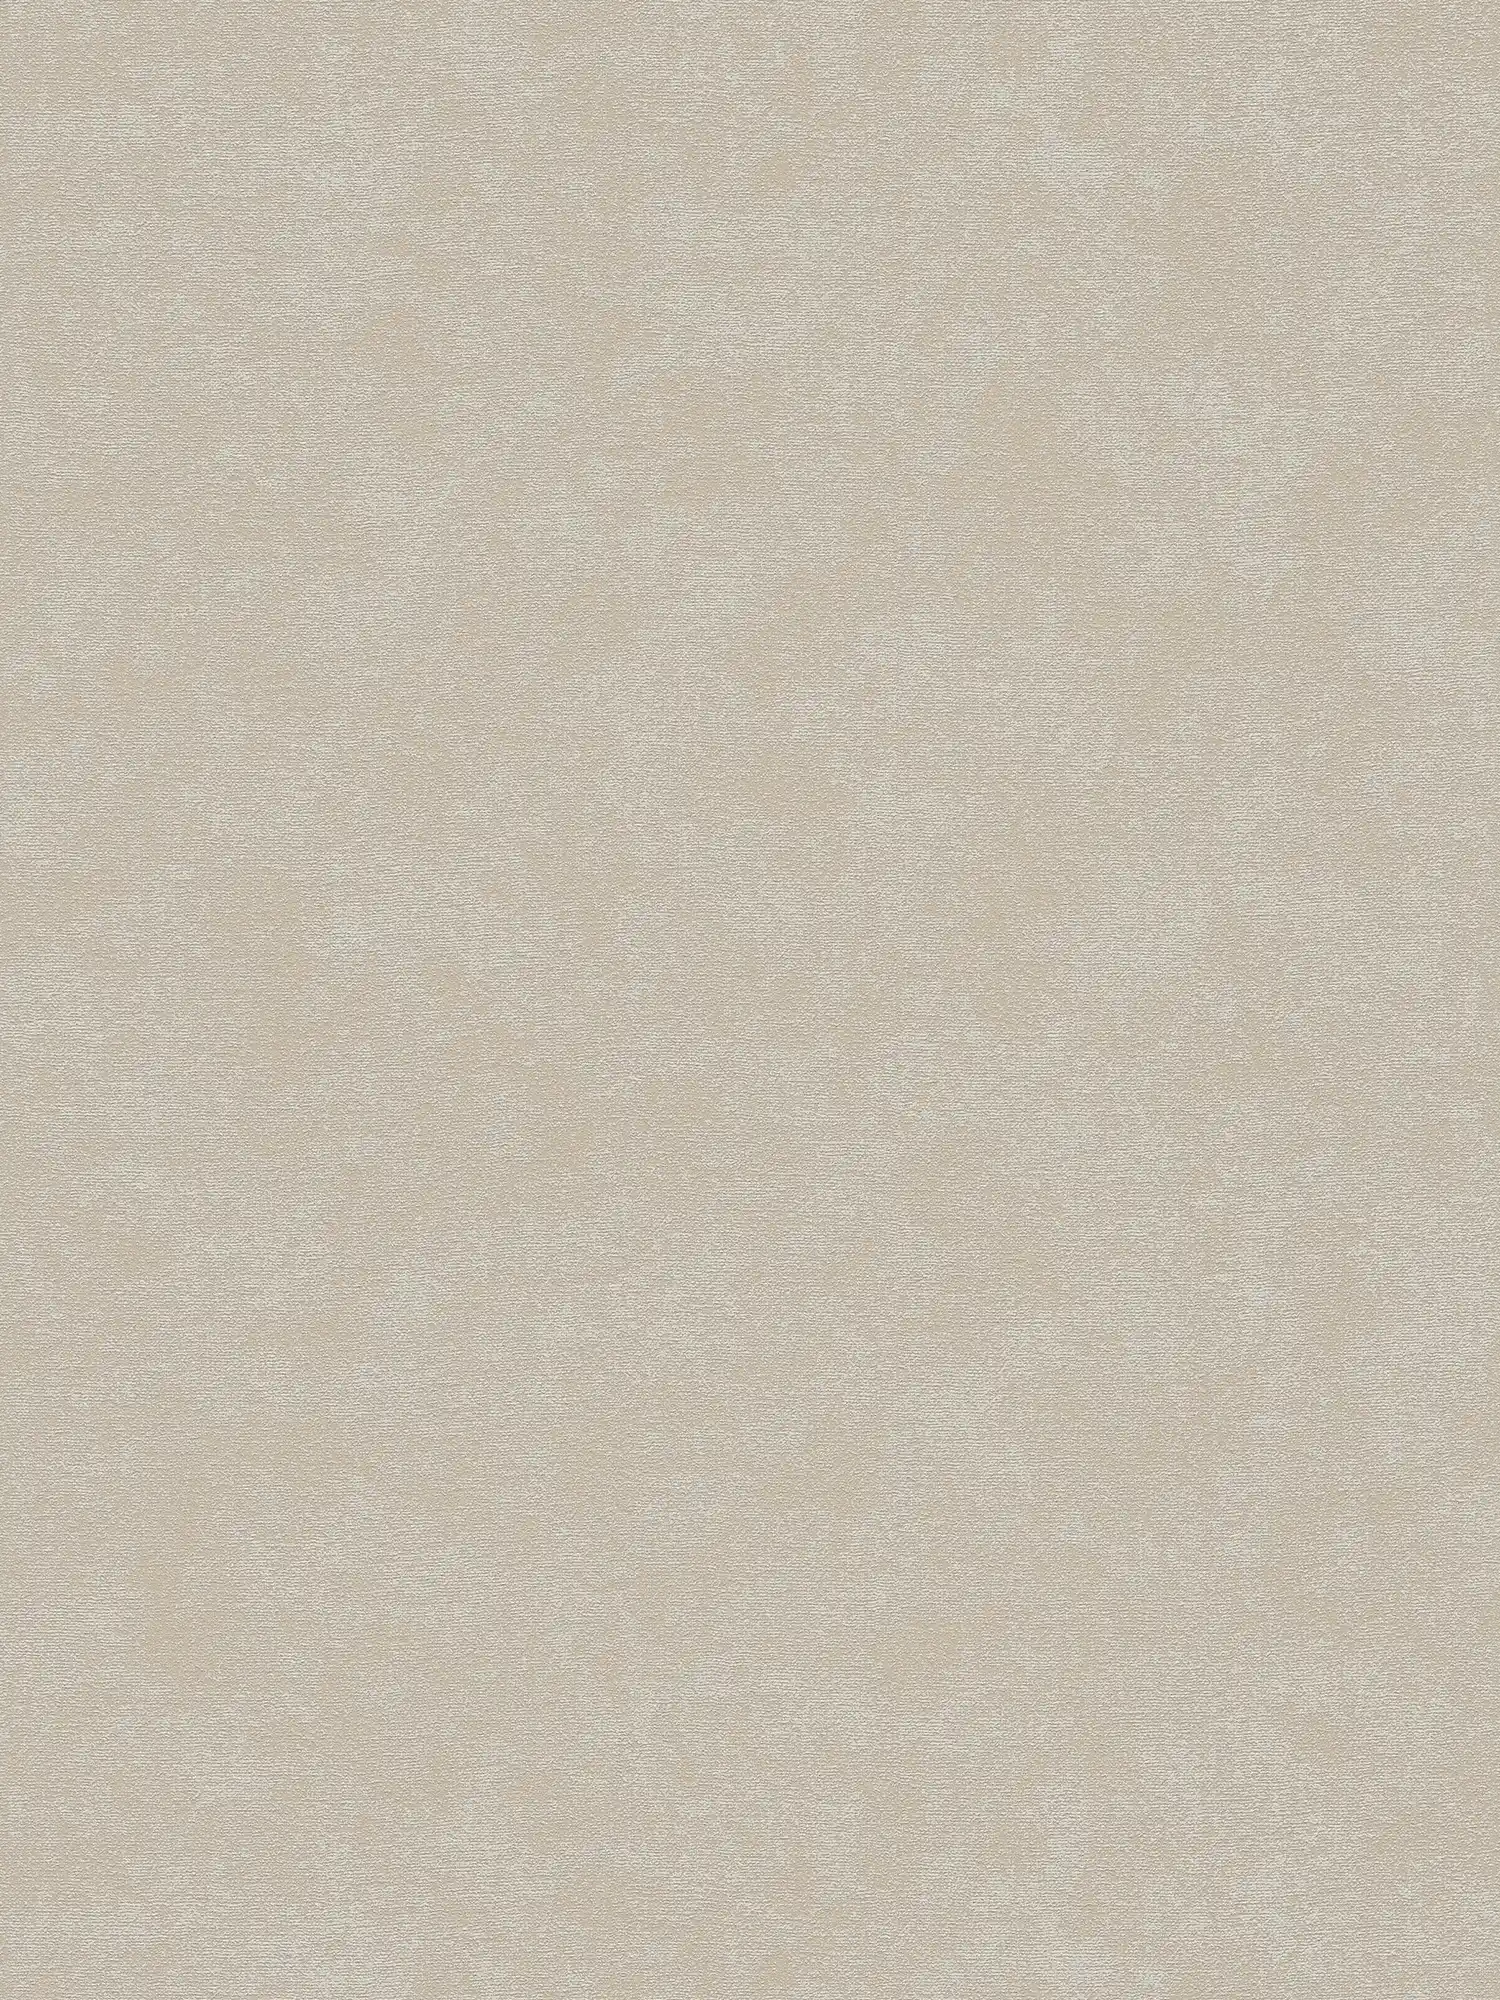 Einfarbige Vliestapete mit leichter Struktur – Grau, Beige
